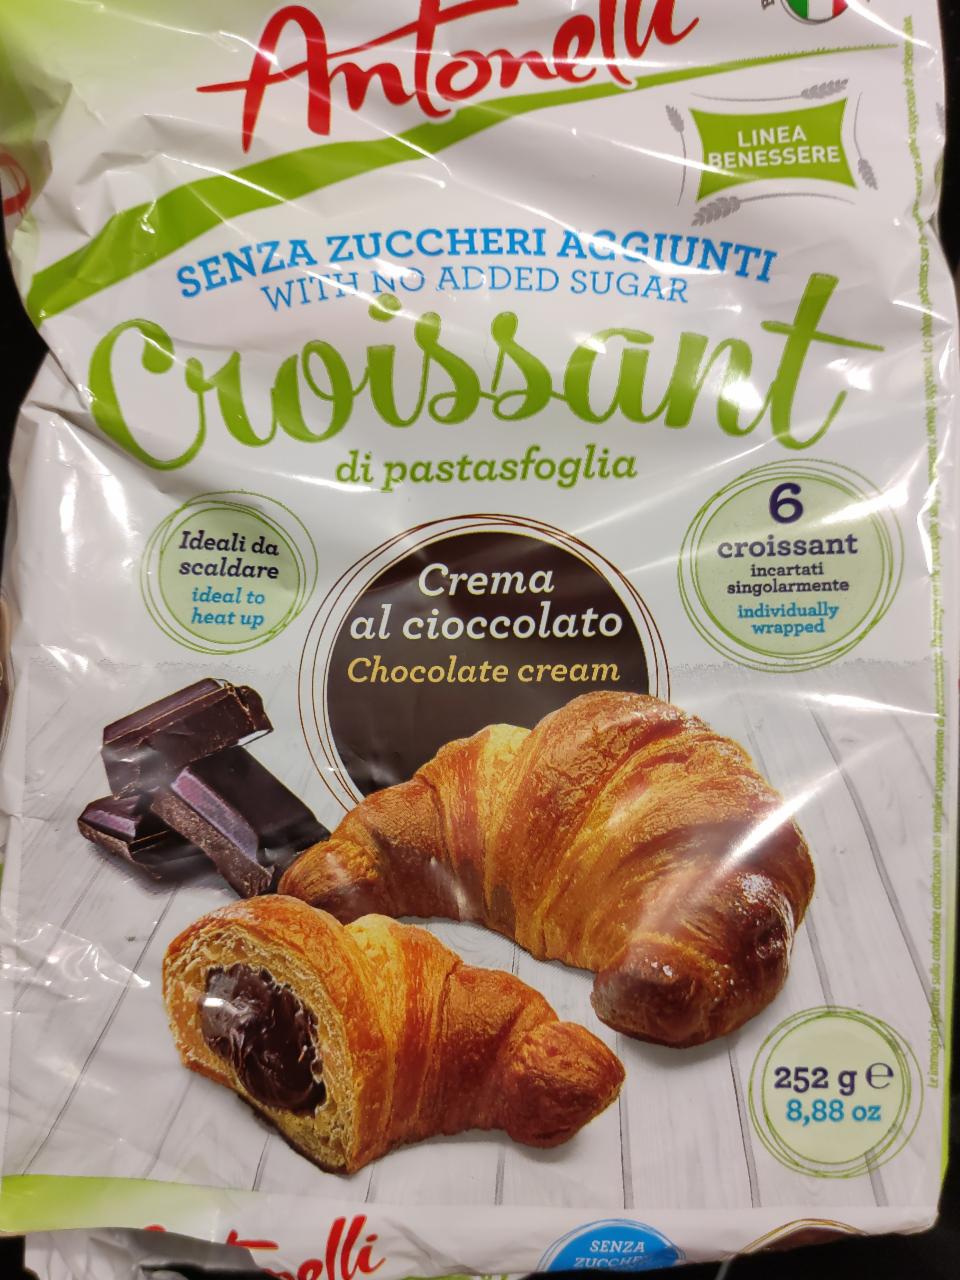 Fotografie - Croissant di pastasfoglia Crema al Cioccolato Antonelli